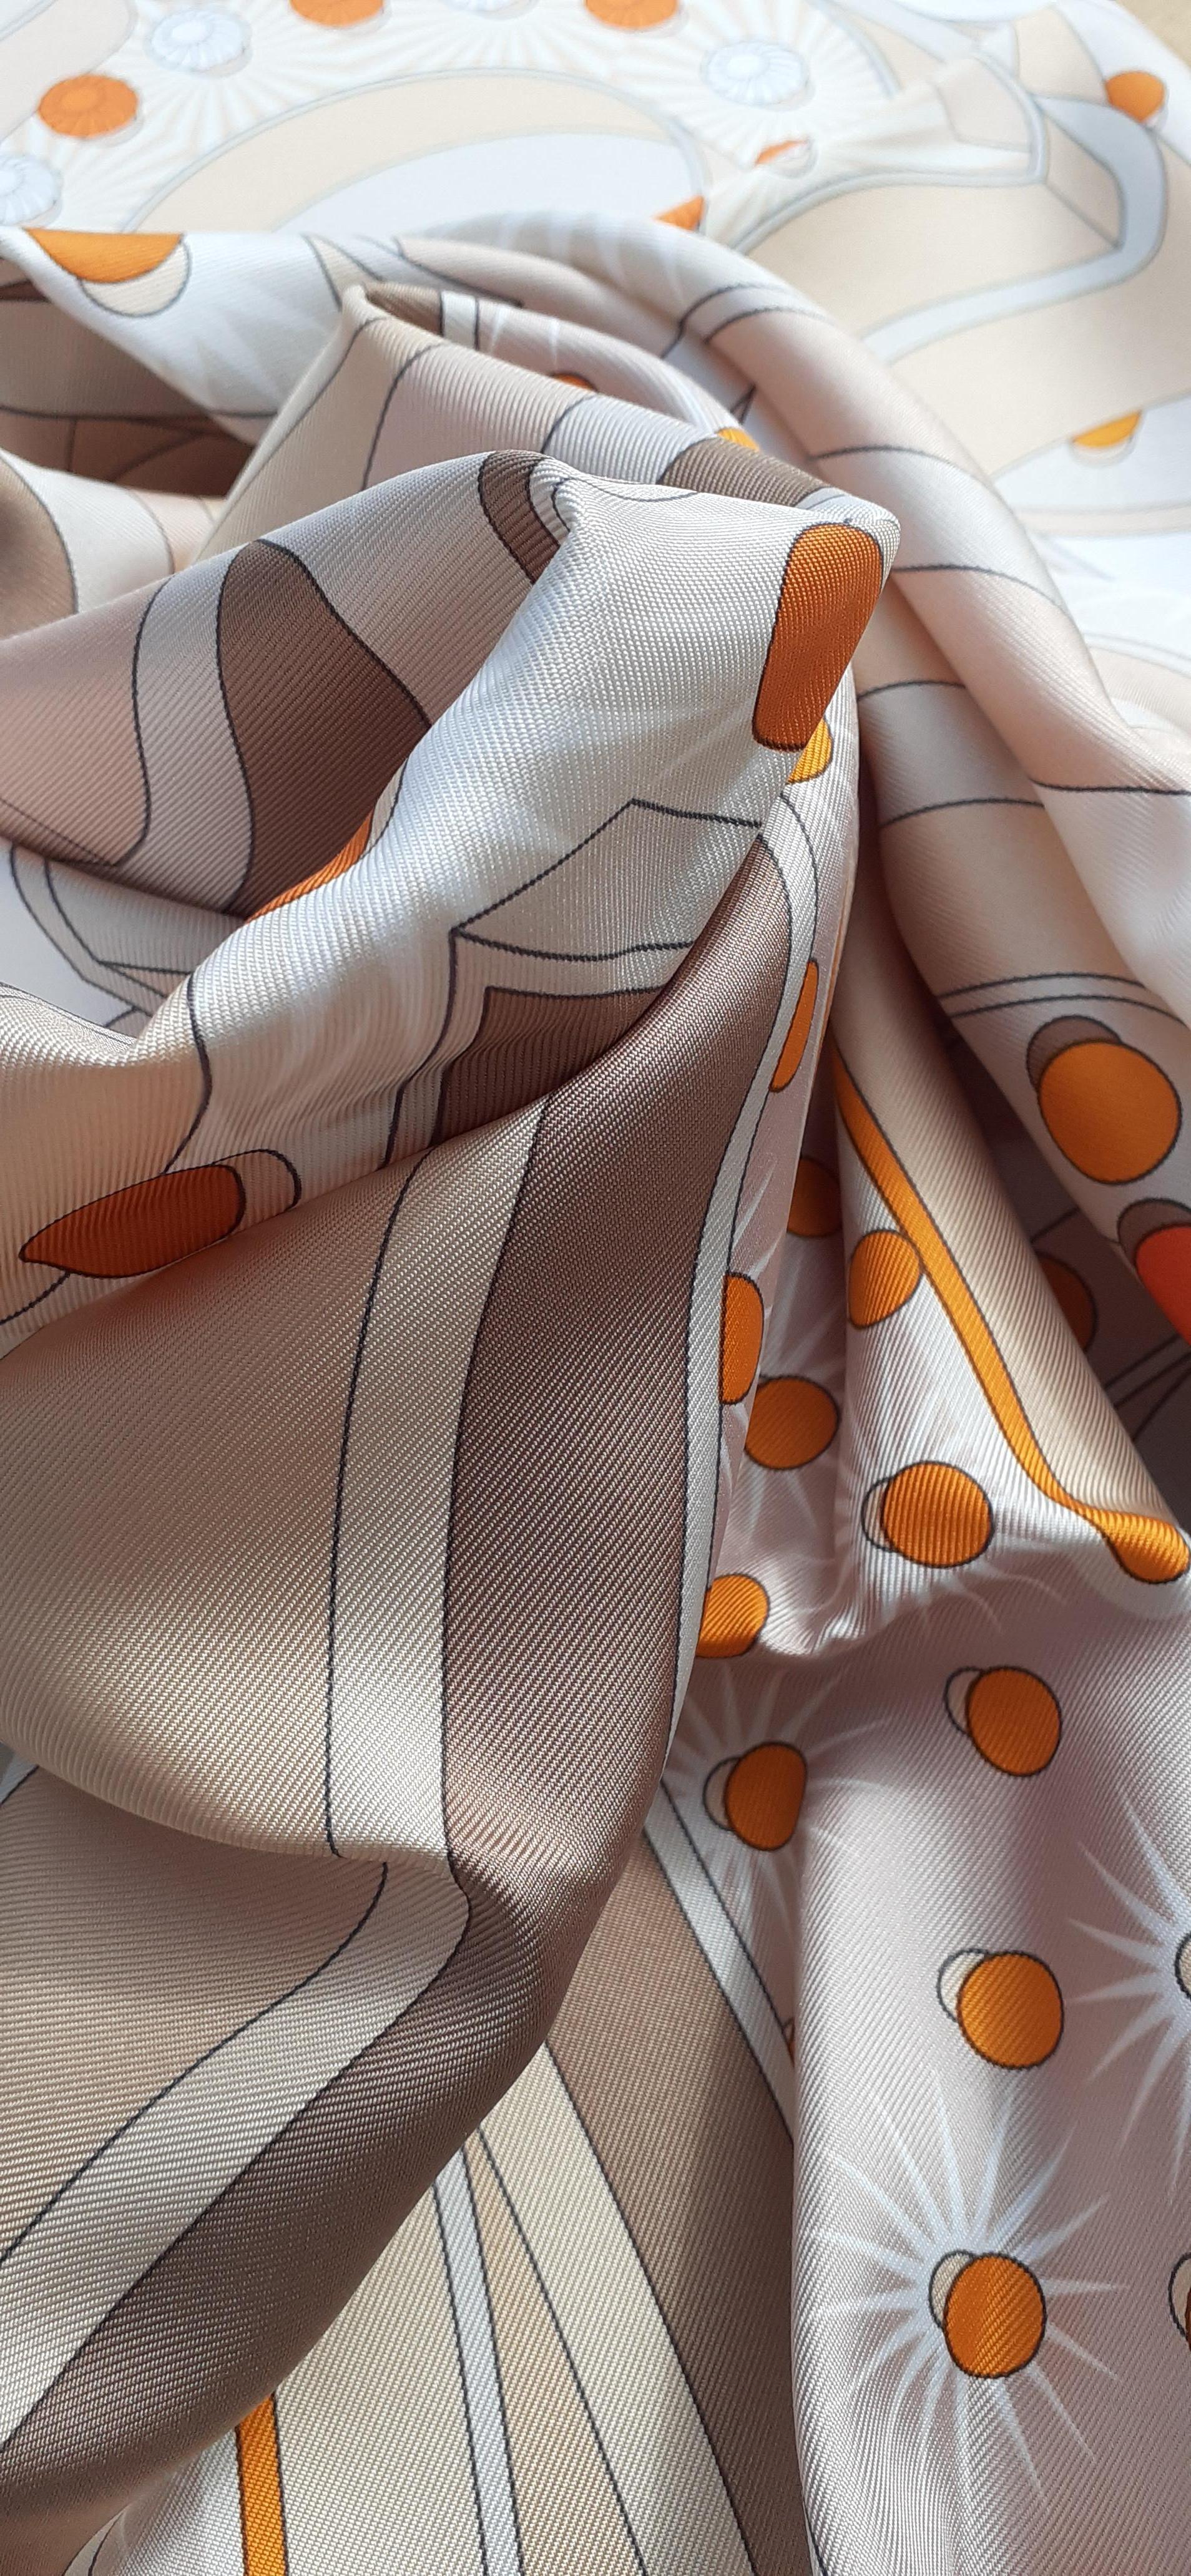 Hermès Silk Scarf HERMES ELECTRIQUE Rybaltchenko Blanc Beige Orange 90 cm For Sale 5